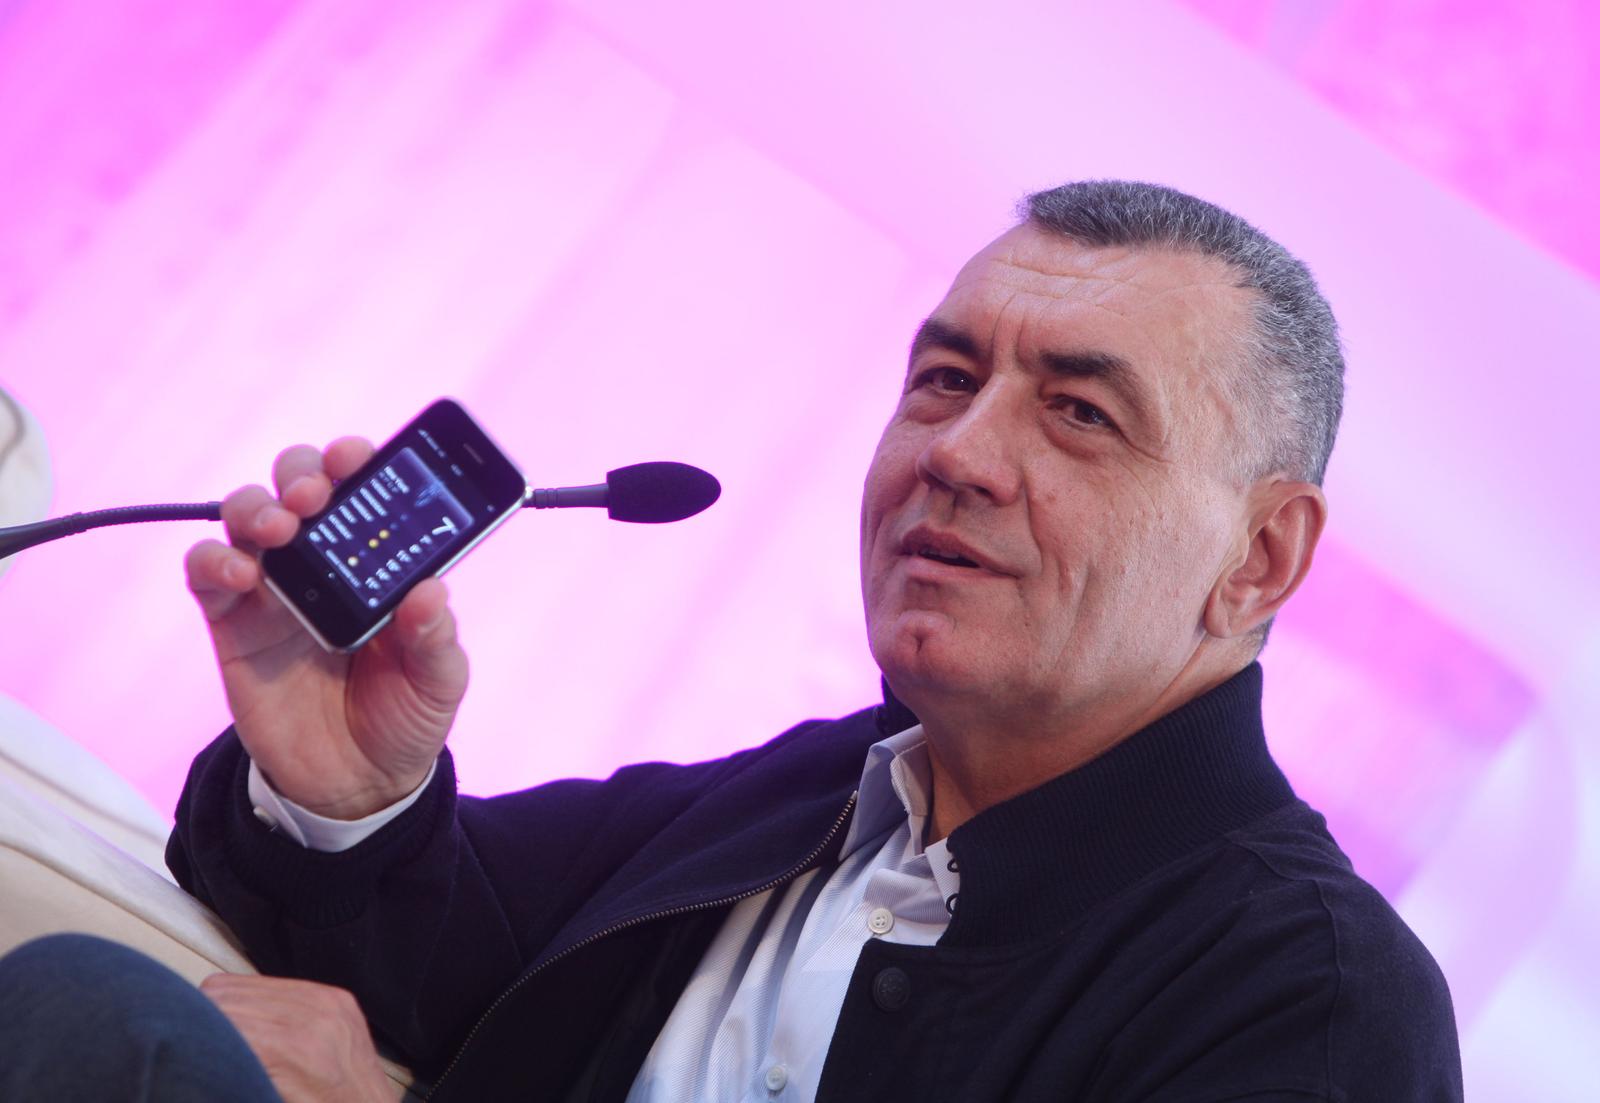 28.10.2008., Zagreb - Na glamuroznoj prezentaciji za medije u Muzeju Mimara, T-Mobile je najavio dolazak jednog od tehnoloski najnaprednijih i definitivno najiscekivanijeg mobitela danasnjice - Appleovog iPhonea 3G. Ivica Mudrinic, predsjednik Uprave i glavni izvrsni direktor T-HT-a.

 Photo: Davor Puklavec/PIXSELL